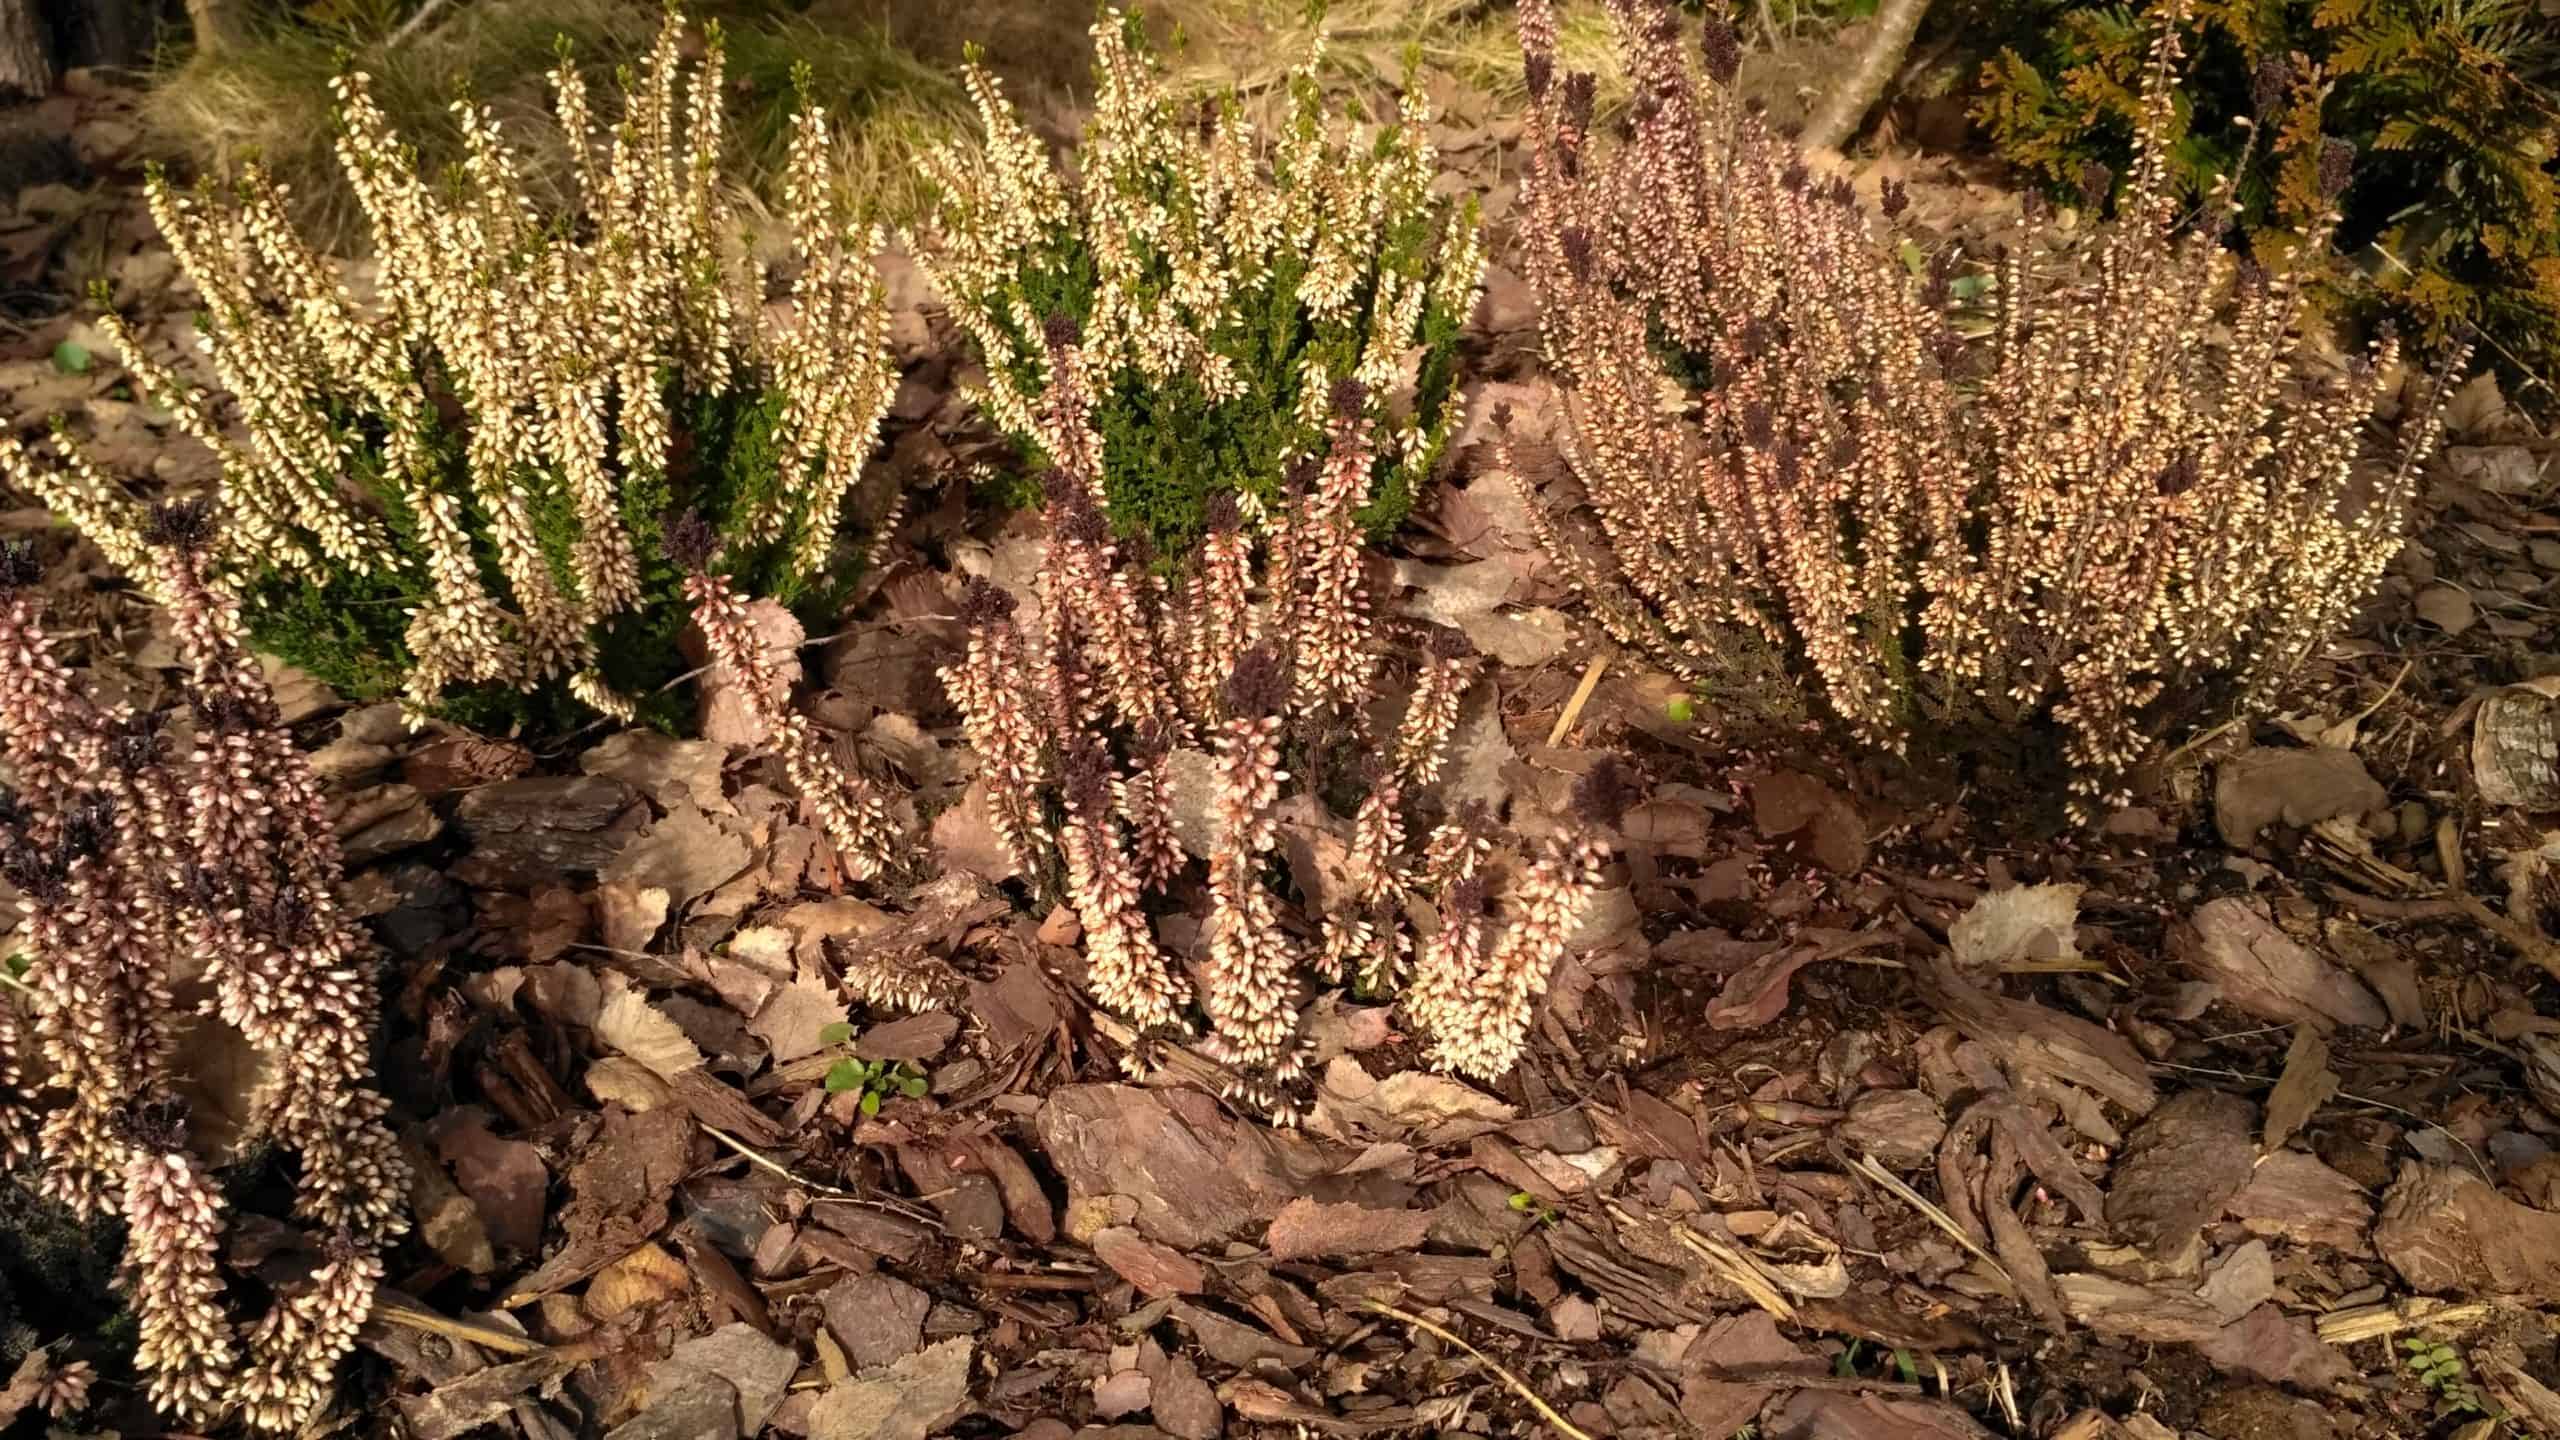 Wrzos pospolity (Calluna vulgaris) – Wrzosy w ogrodzie uprawa, pielęgnacja i wymagania wrzosów